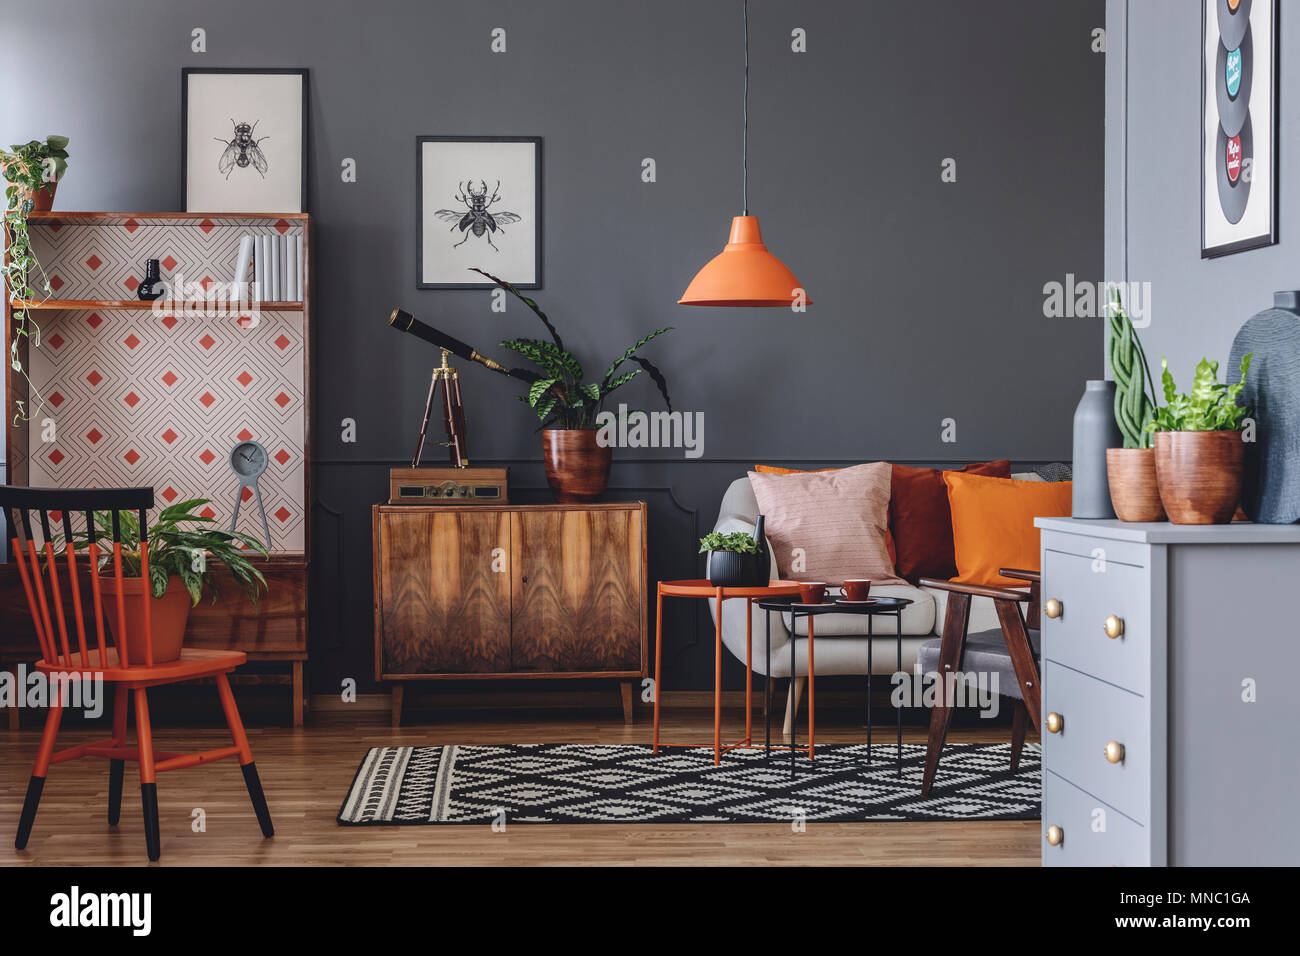 Plante et télescope sur armoire en bois à côté d'un canapé dans salon  rustique intérieur avec lampe orange Photo Stock - Alamy